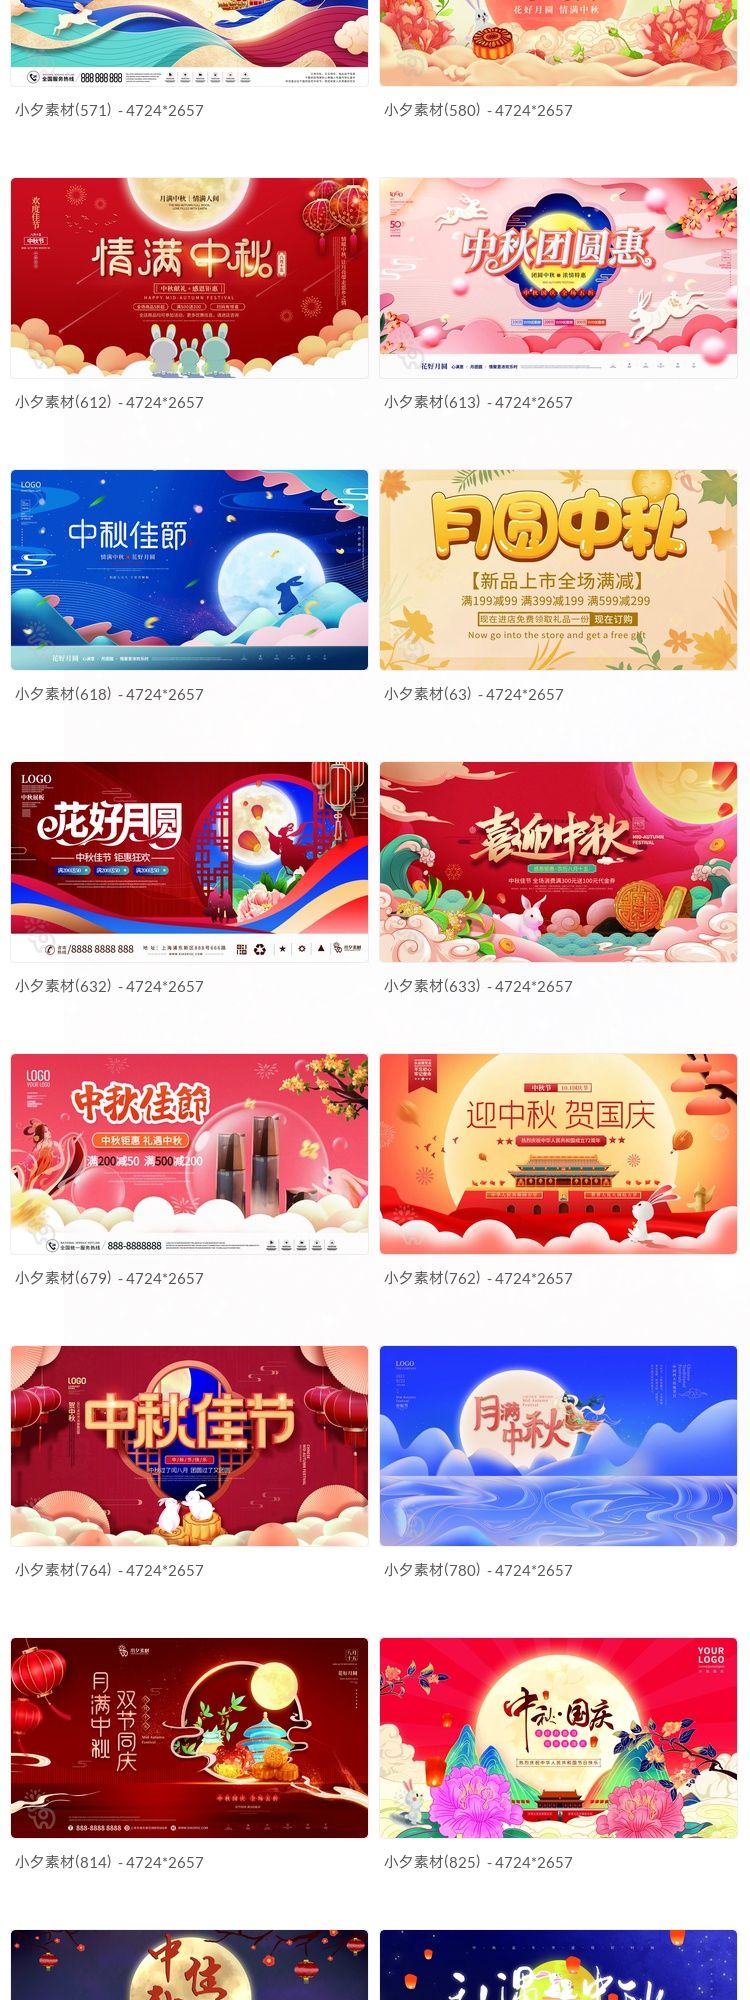 中秋节月饼嫦娥玉兔宣传促销海报展板模板PSD插图2小新卖蜡笔